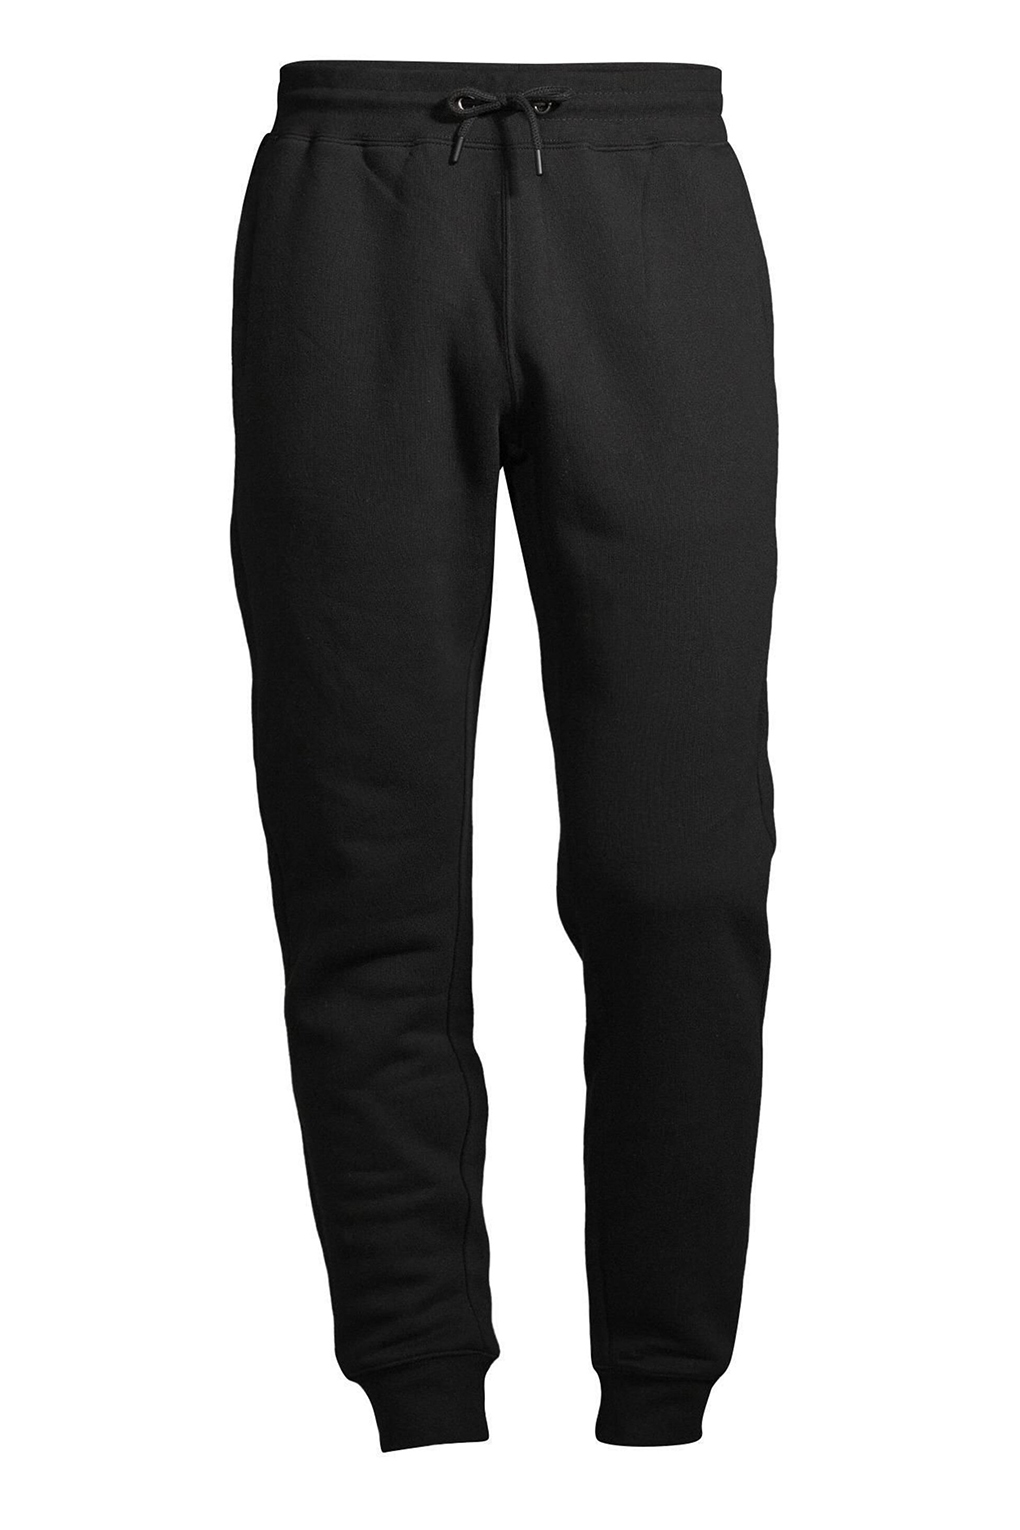 фото Спортивные брюки мужские construe 2110 dean черные m